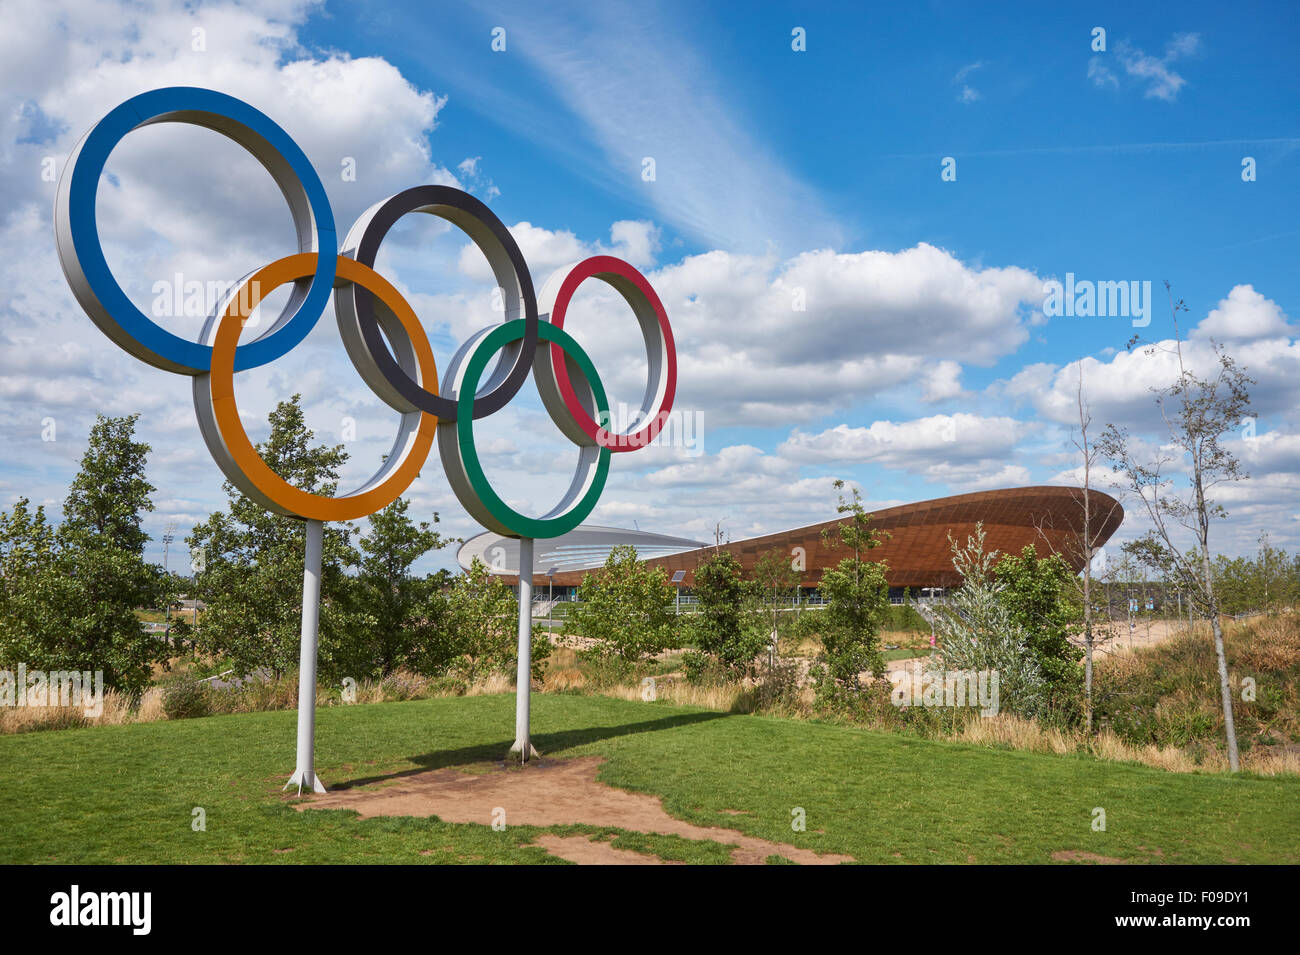 Symbole des anneaux olympiques et Lee Valley VeloPark au Queen Elizabeth Olympic Park, Londres Angleterre Royaume-Uni UK Banque D'Images